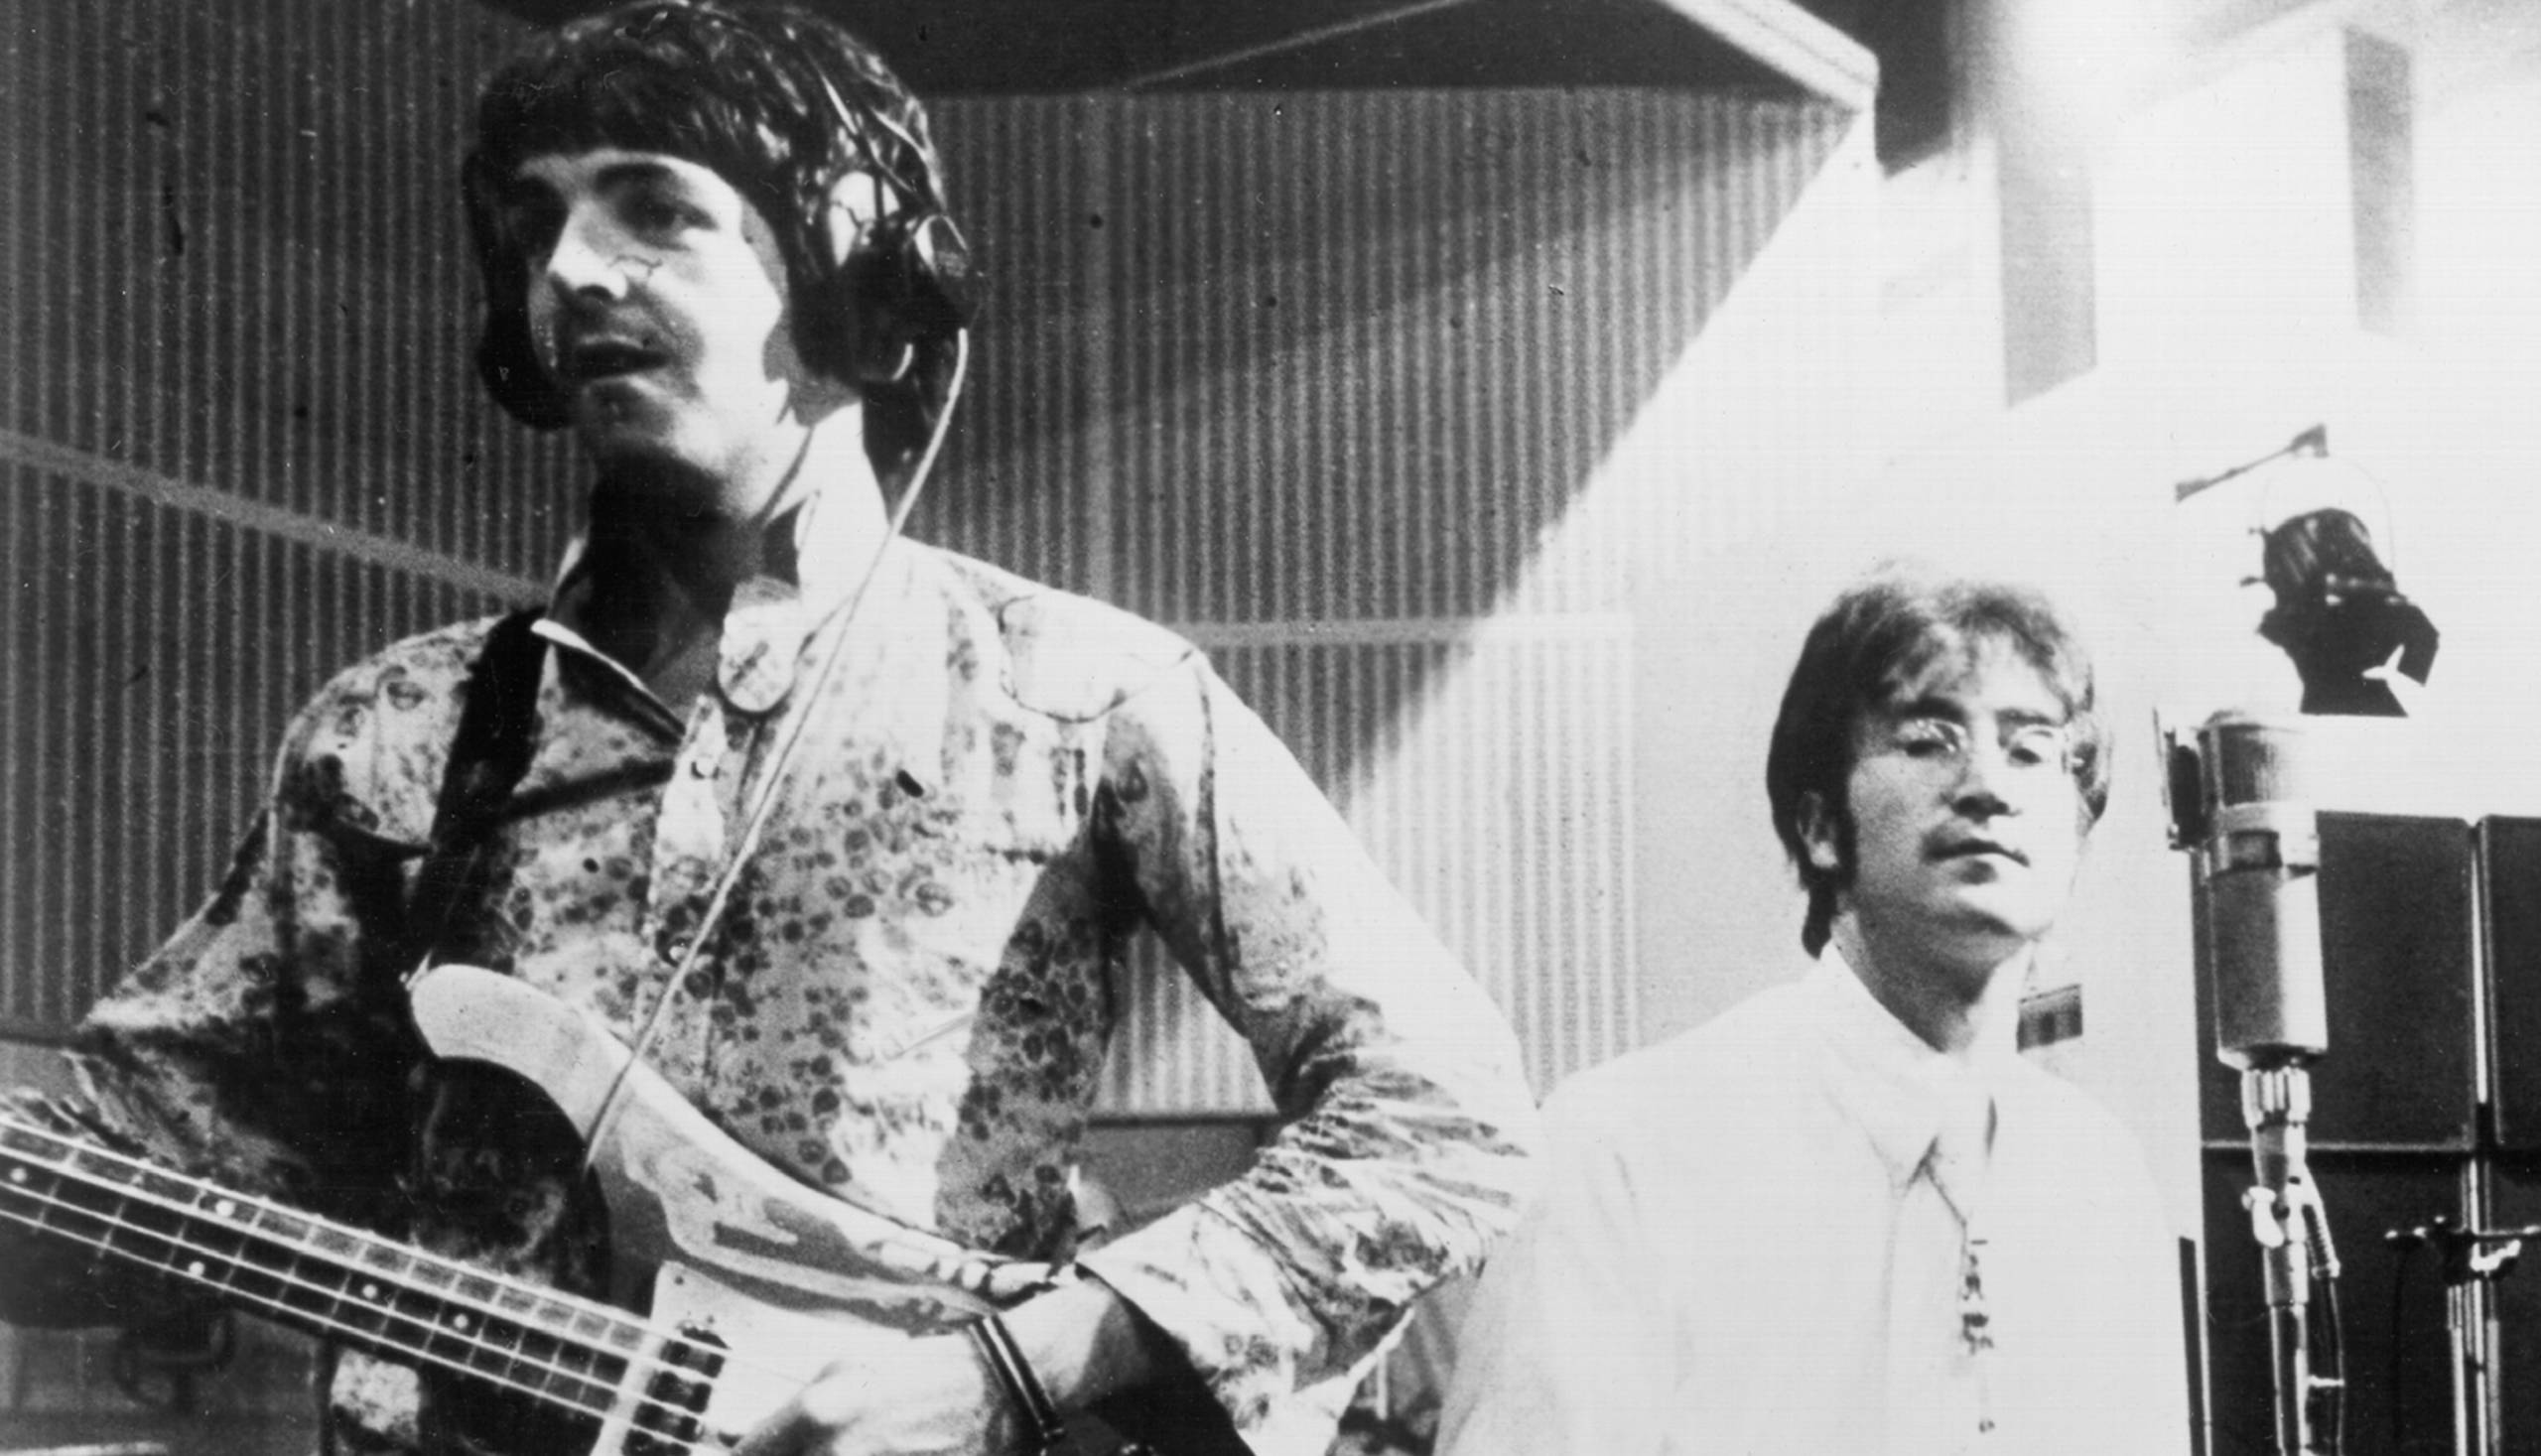 John Lennon und Paul McCartney im Studio